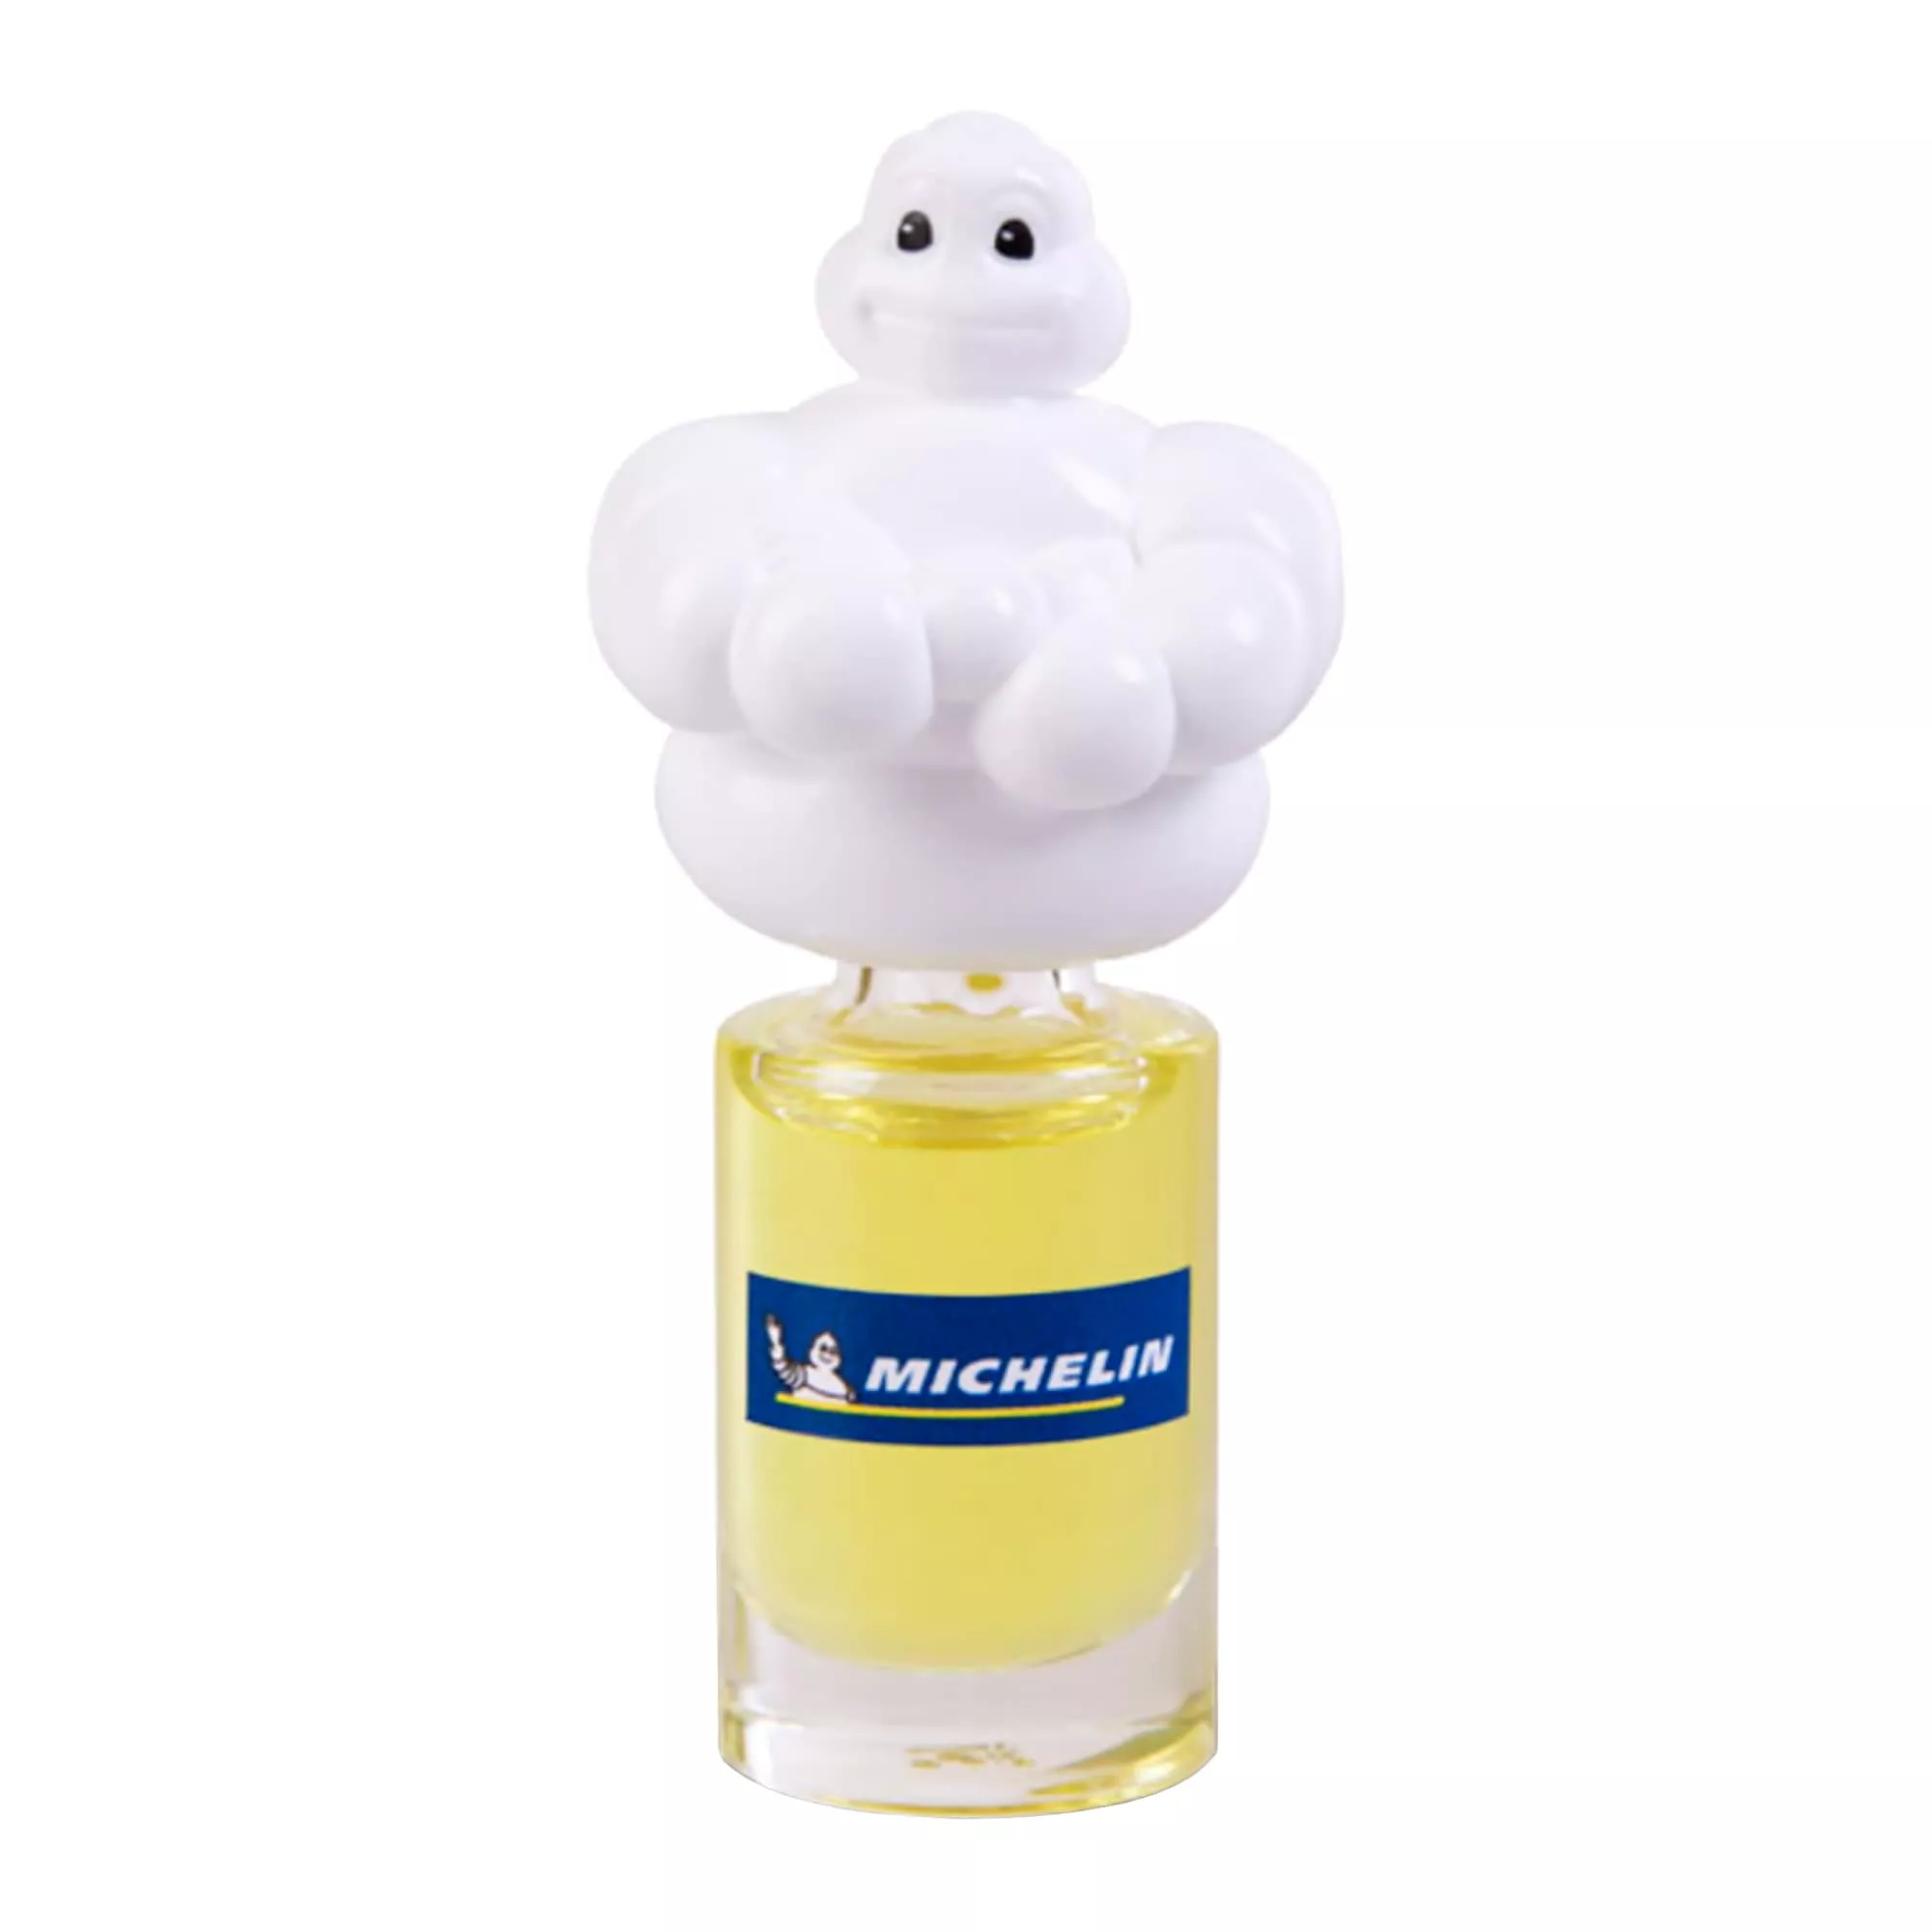 Ароматизатор Michelin Ваниль мини-бутылка 5мл 031791 (W31791)